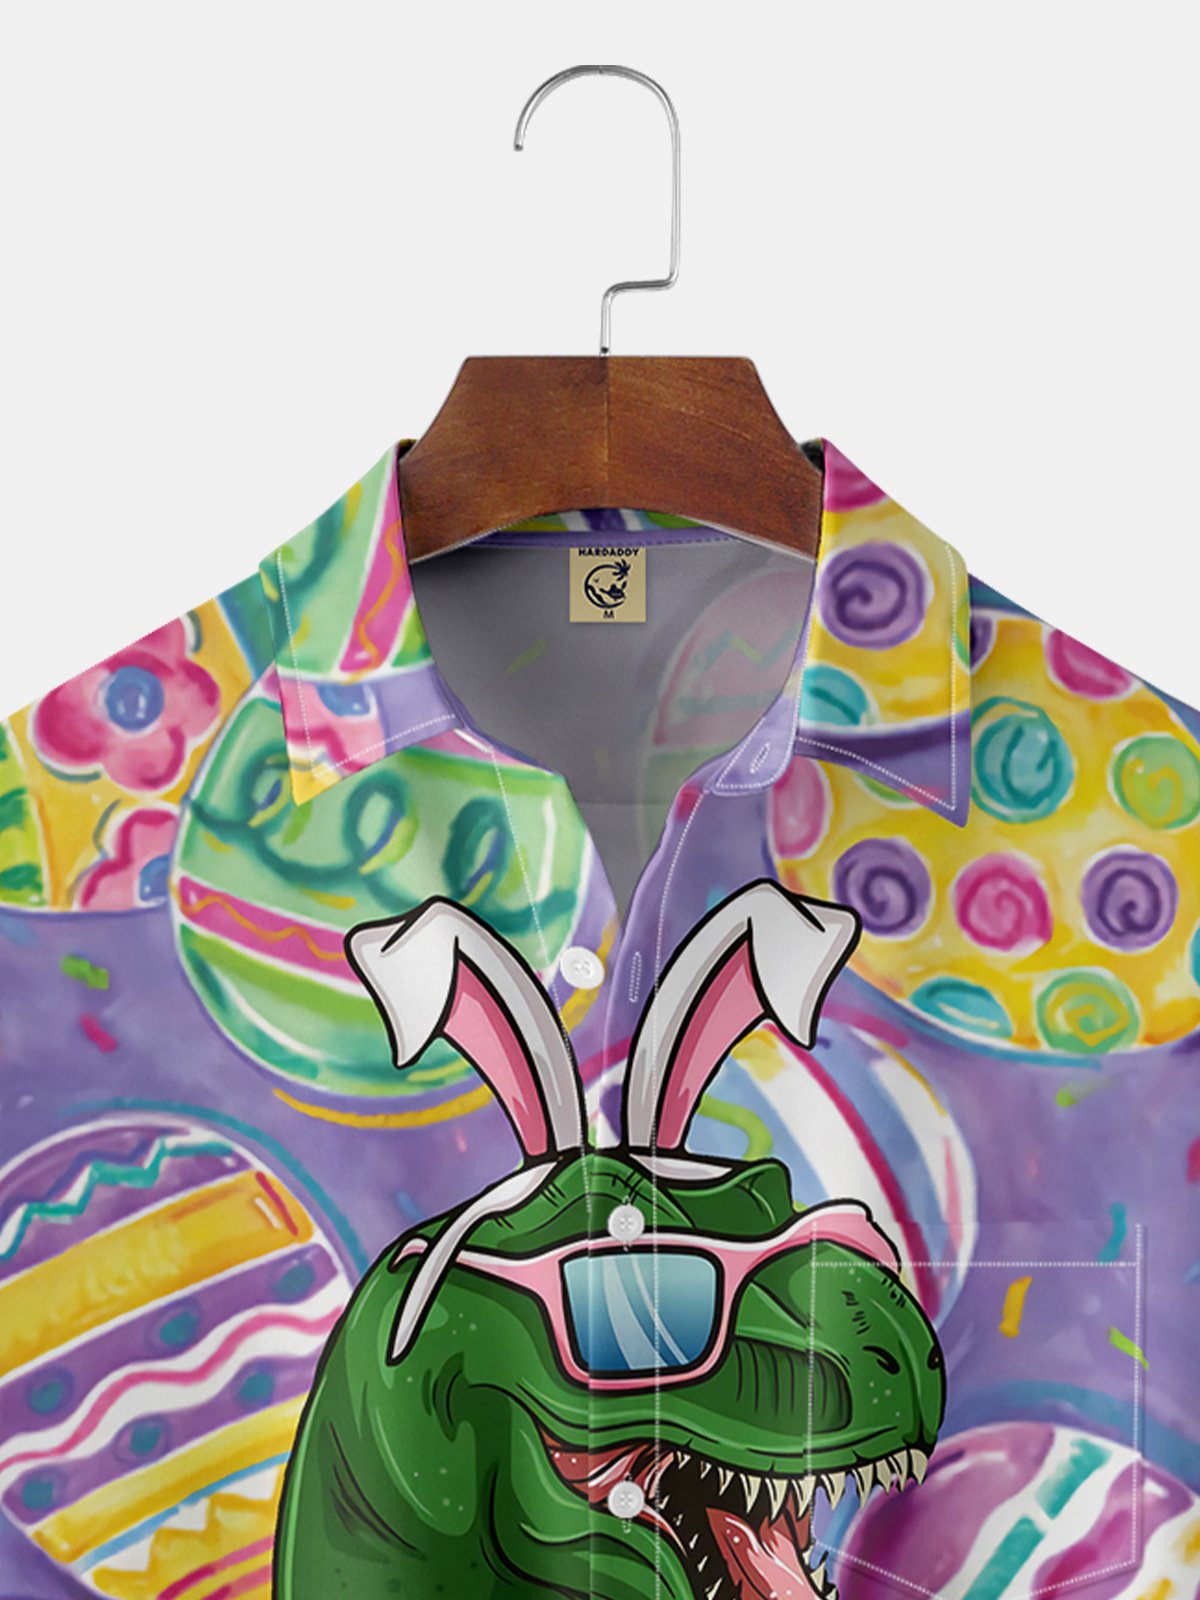 Hardaddy Easter Shirts Dinosaur Easter Egg Purple Regular Fit Chest Pocket Short Sleeve Shirt For Men